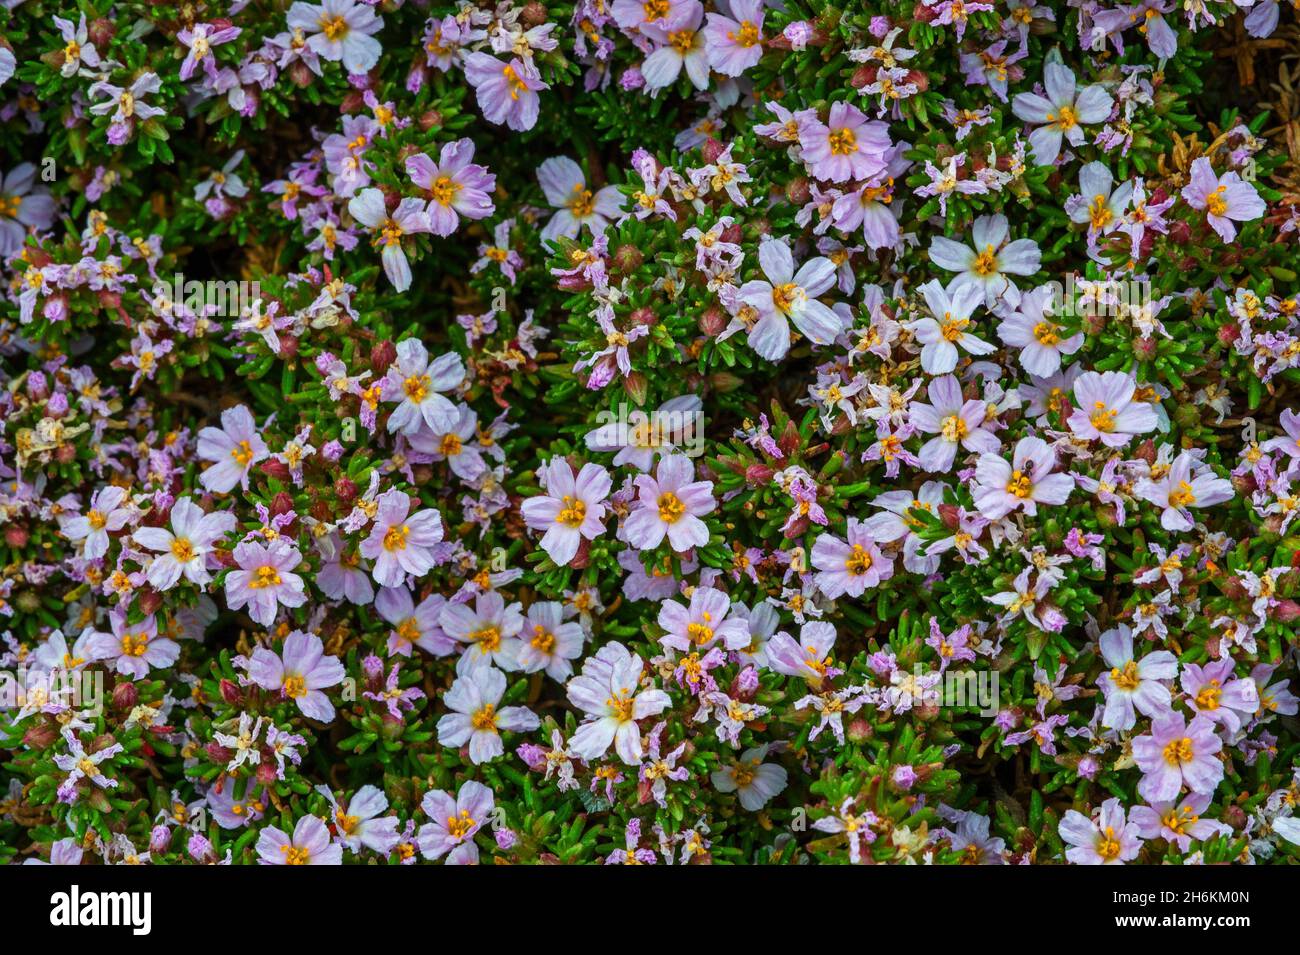 Brughiera di mare (Frankenia laevis) in fiore, arbusto costiero basso nativo a sud-ovest Europa e la Gran Bretagna Foto Stock